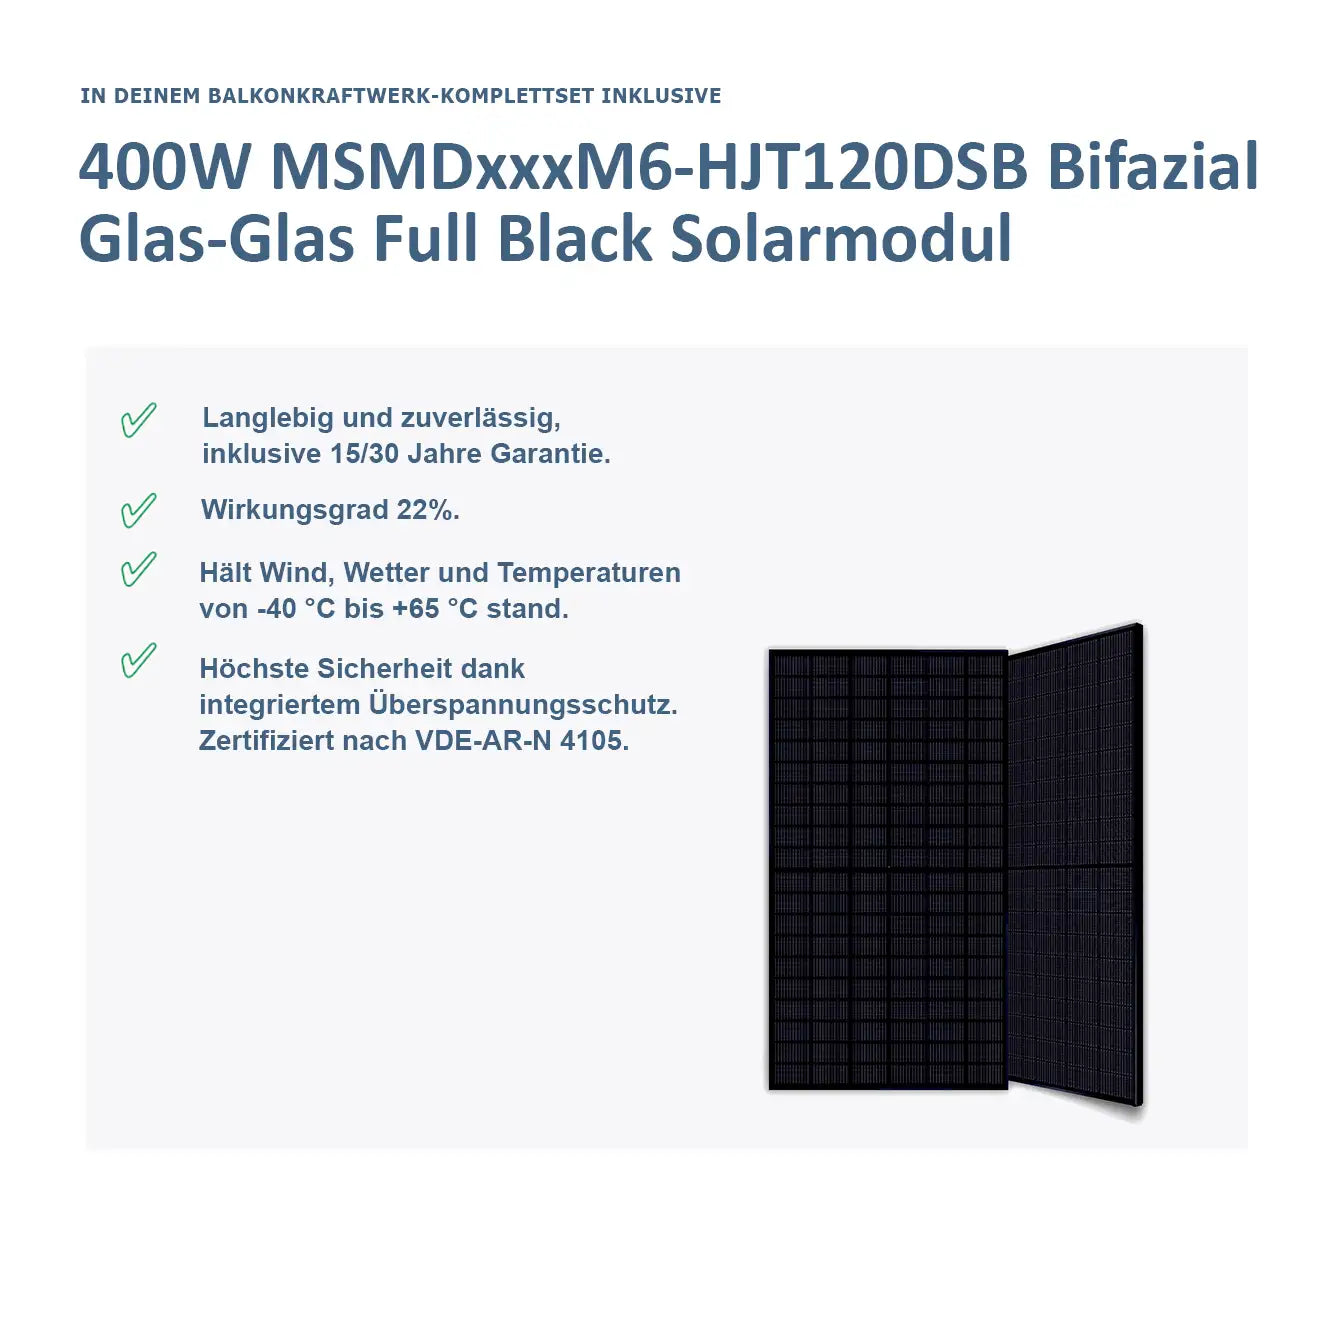 MiniPower 1600W/1500W Balkonkraftwerk Bifazial Glas-Glas 02